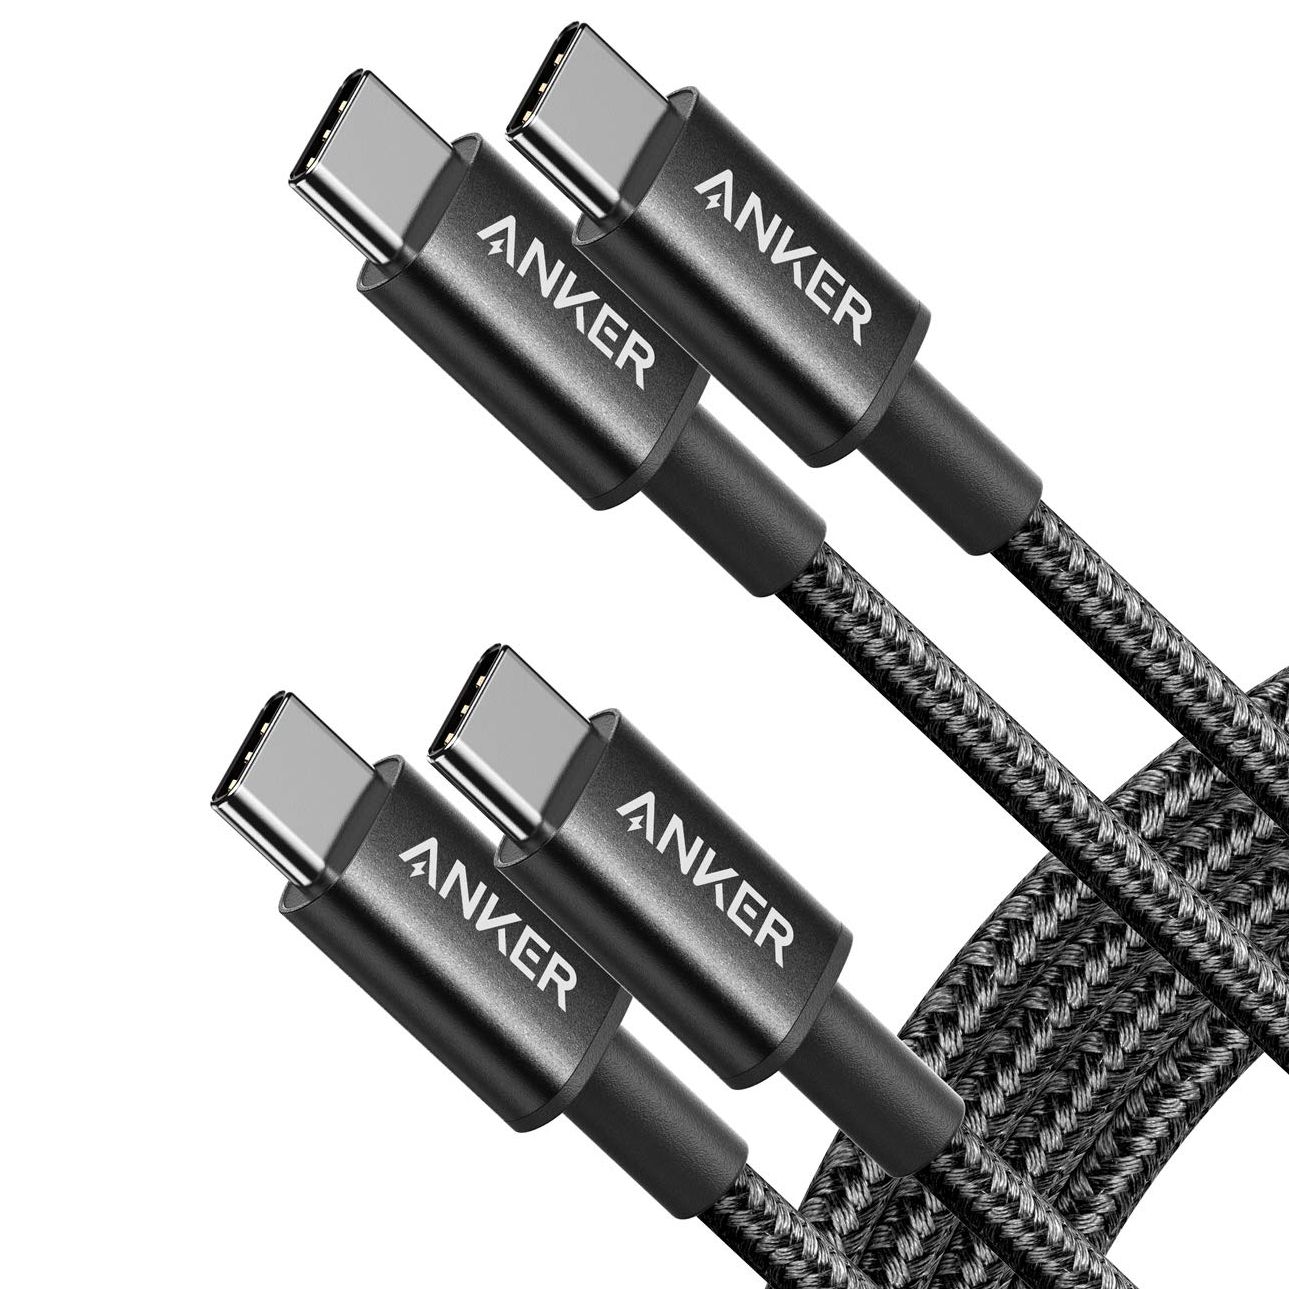 Renderização dos cabos Anker USB-C